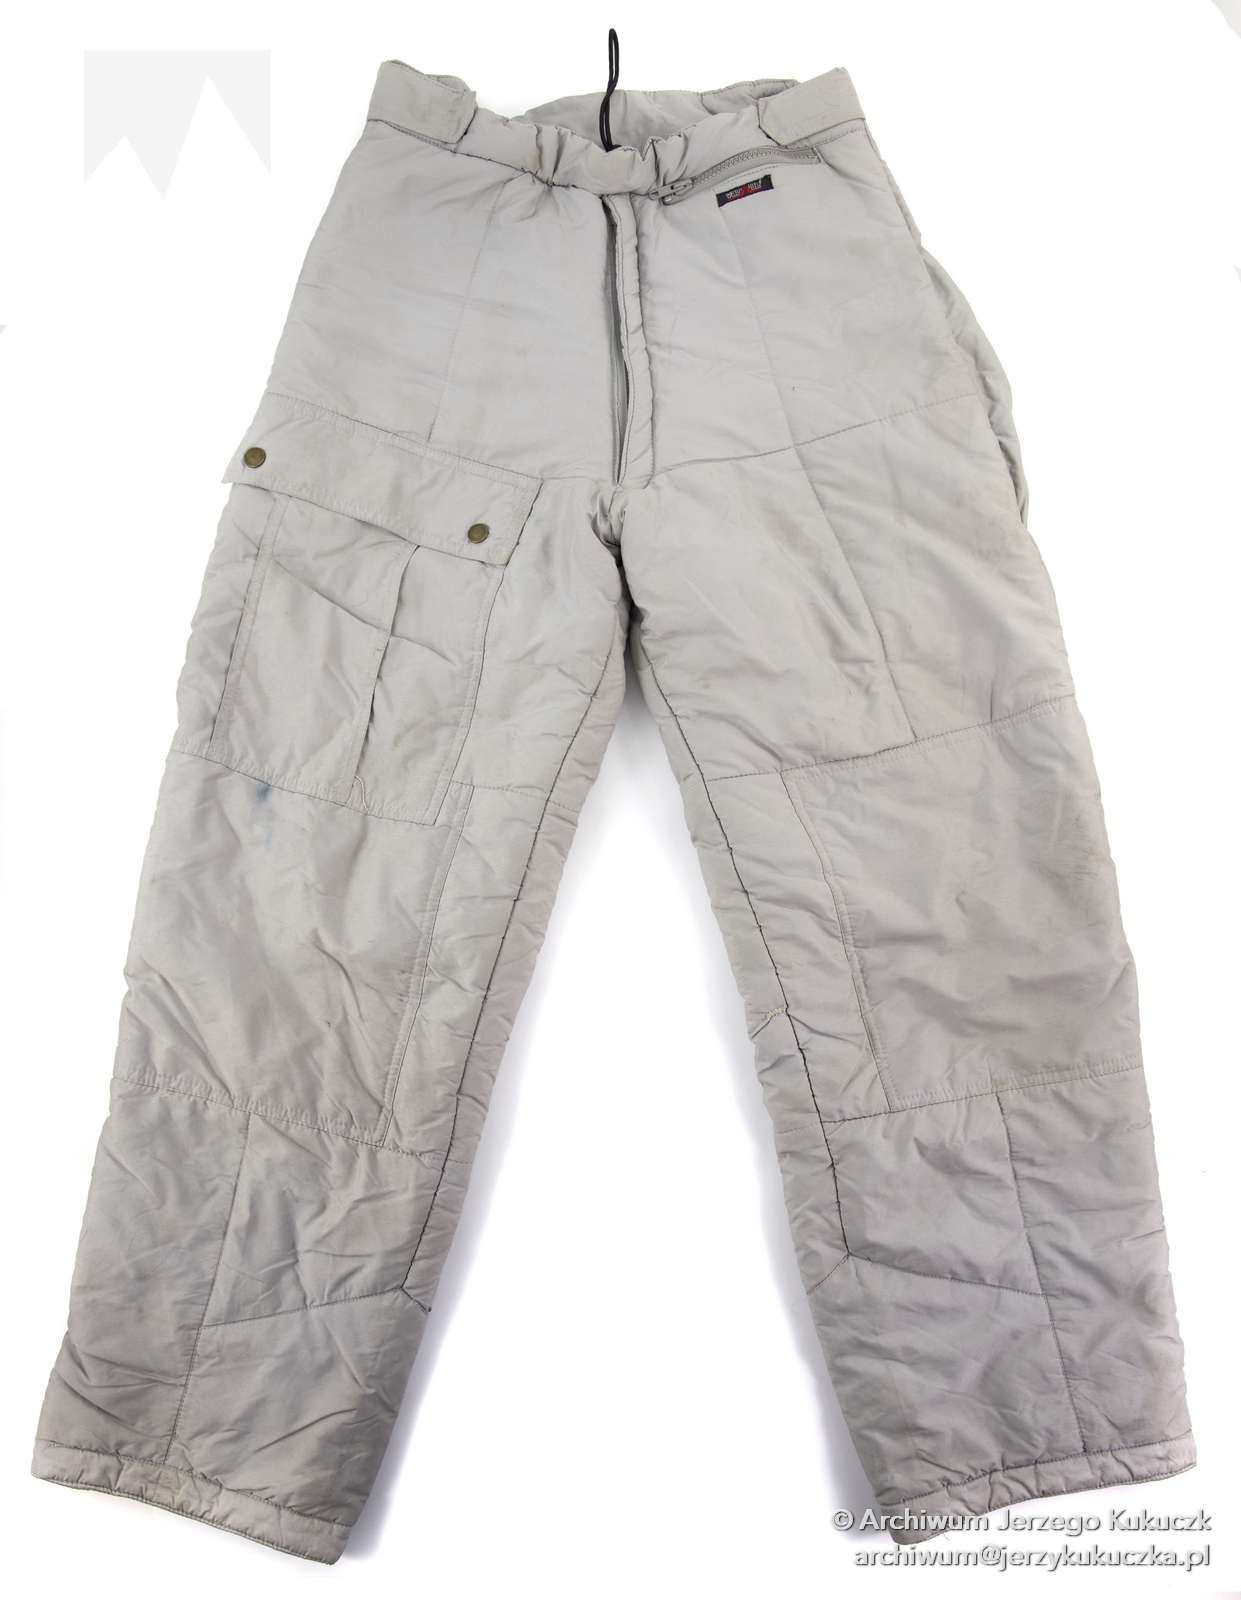 Spodnie ocieplane Jerzego Kukuczki używane w czasie wypraw w góry